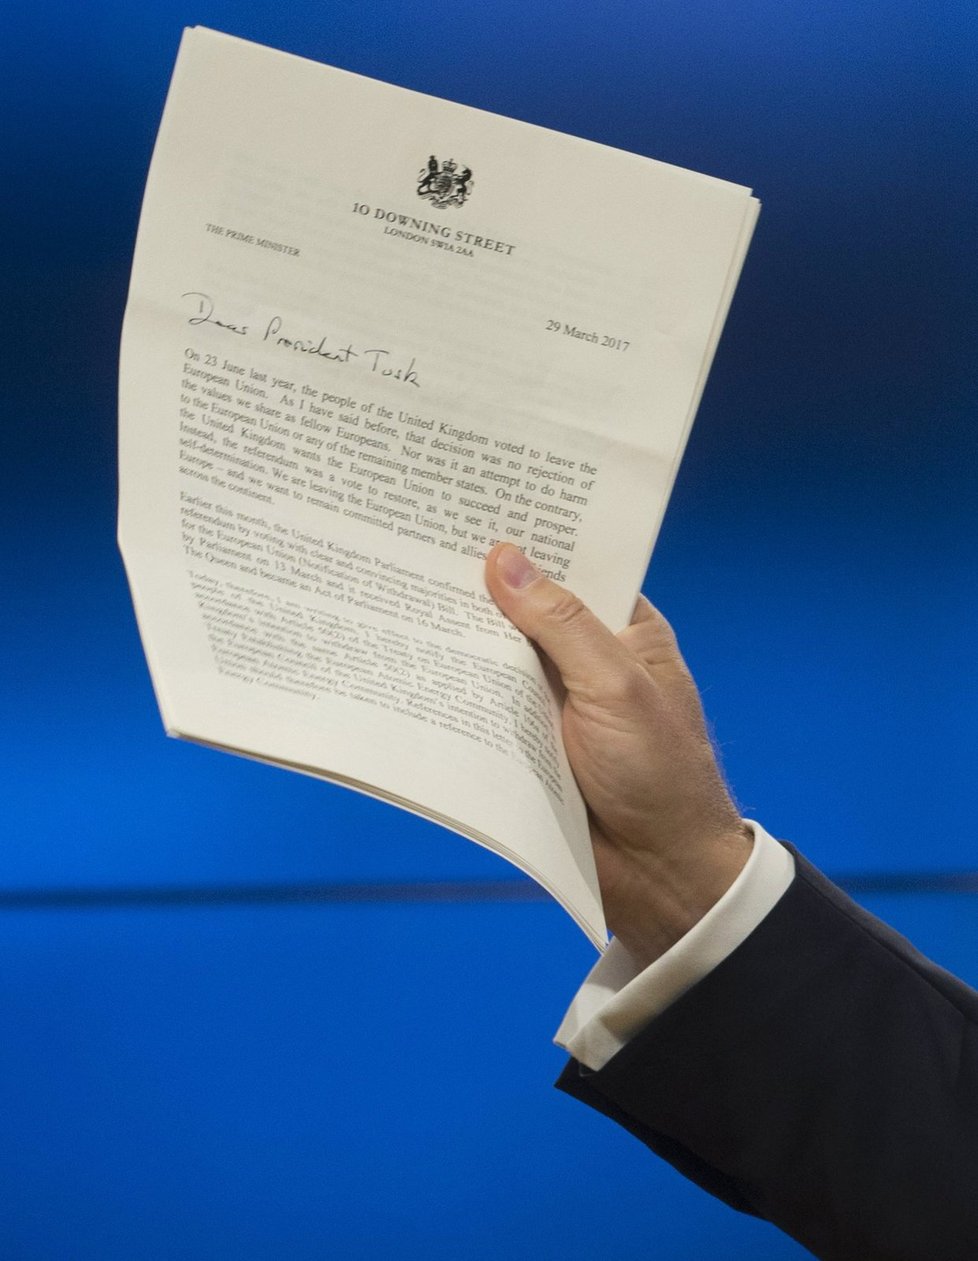 Velká Británie spustila brexit. Předseda Evropské rady Donald Tusk drží oficiální dopis od britské premiérky, který oznamuje začátek procesu, na jehož konci bude odchod Británie z EU, 29. 3. 2017, Brusel.